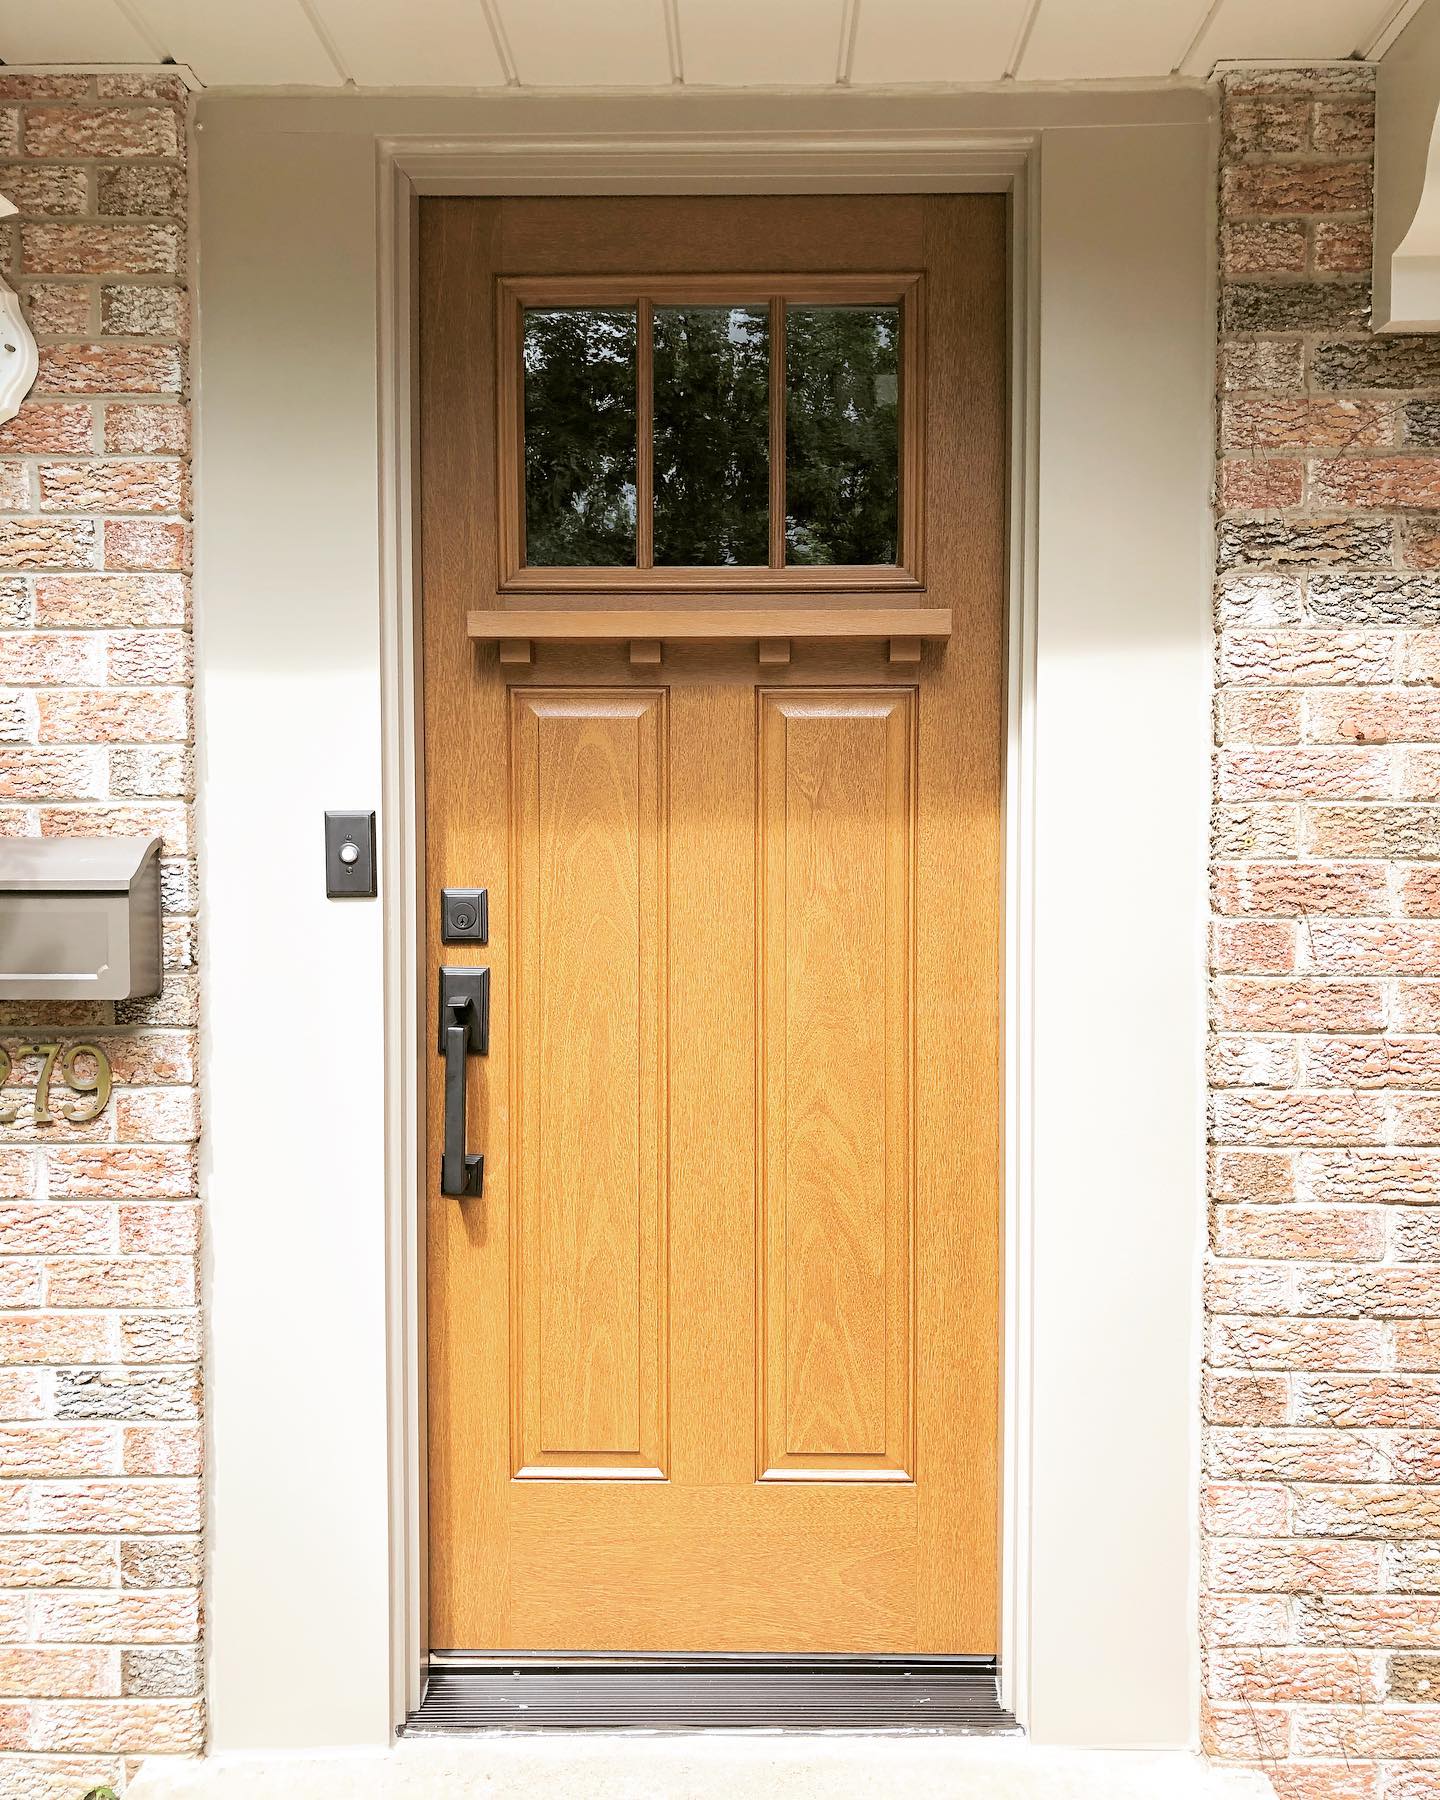 Craftsman style front door in fiberglass wood grain on brick house